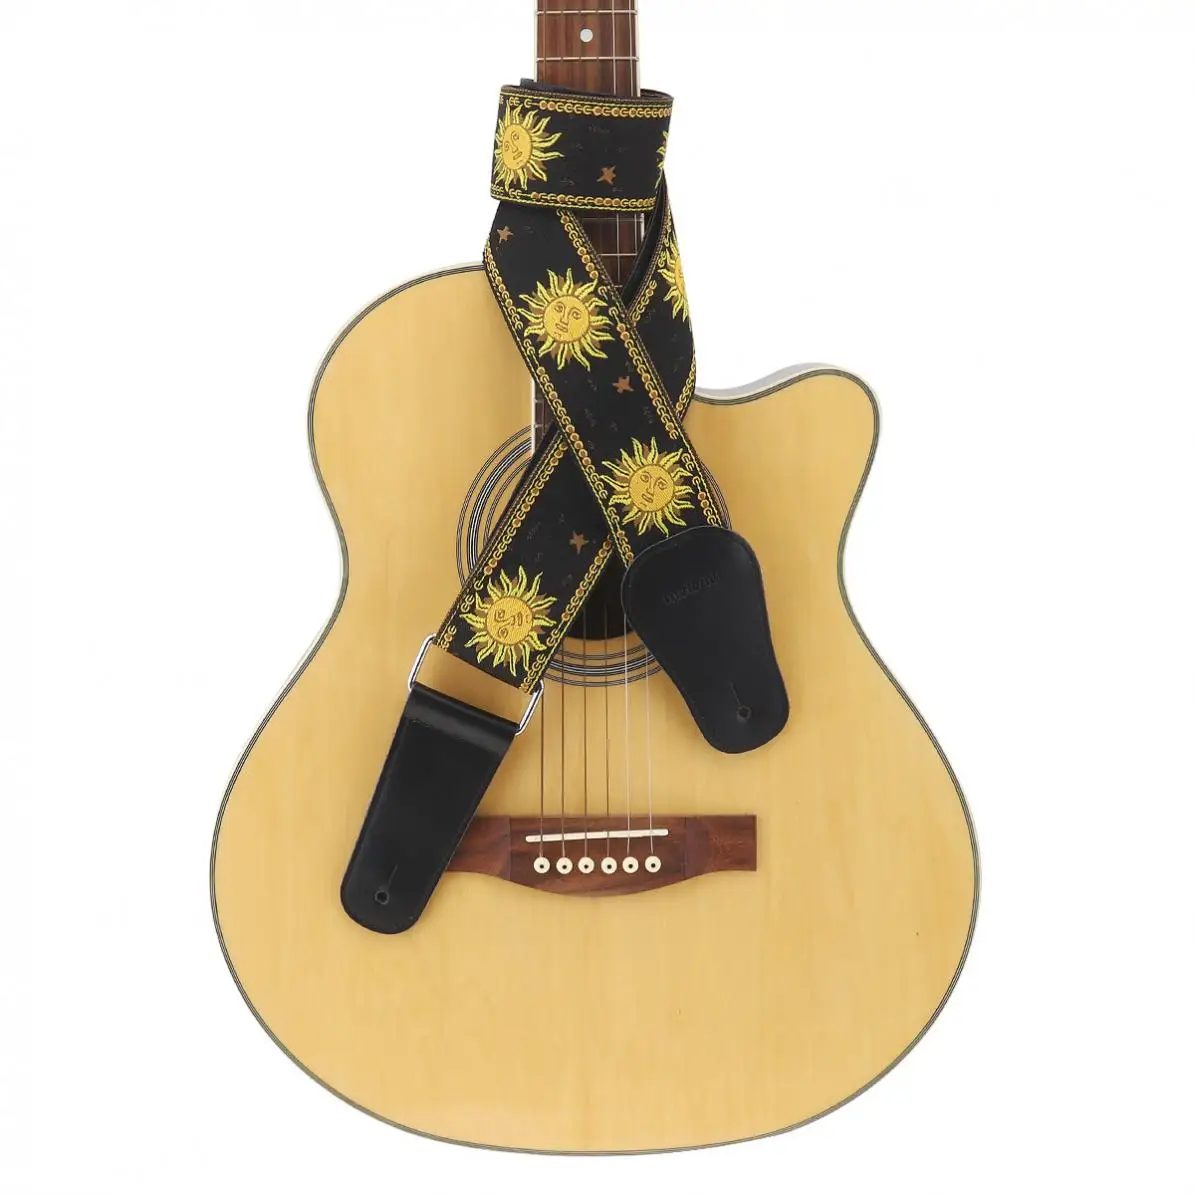 Ayarlanabilir 110-168cm uzunluk Gitar Askısı Çift Kumaş Güneş Çiçek Desen Hakiki deri kemer Gitarist Enstrüman Parçaları Görüntü  4